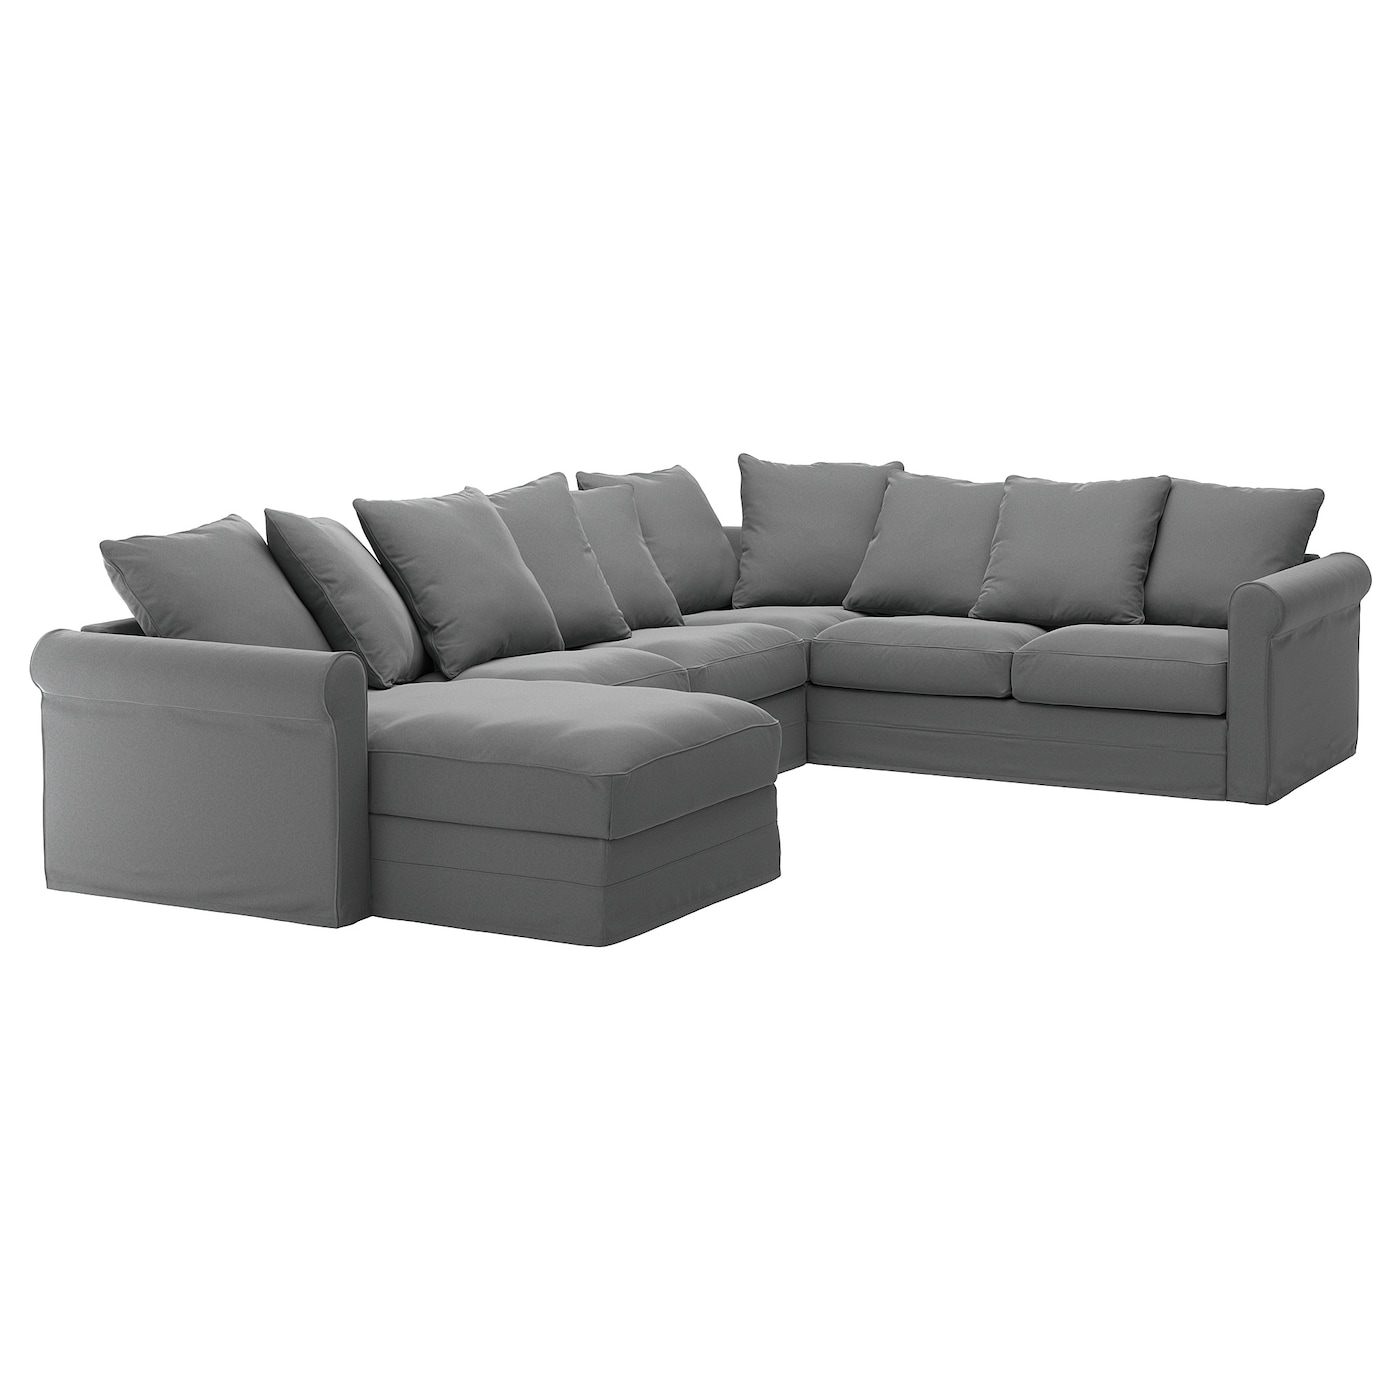 ГРЁНЛИД Диван угловой, 5-местный. диван+диван, Люнген средний серый GRÖNLID IKEA диван офисный угловой стандартный